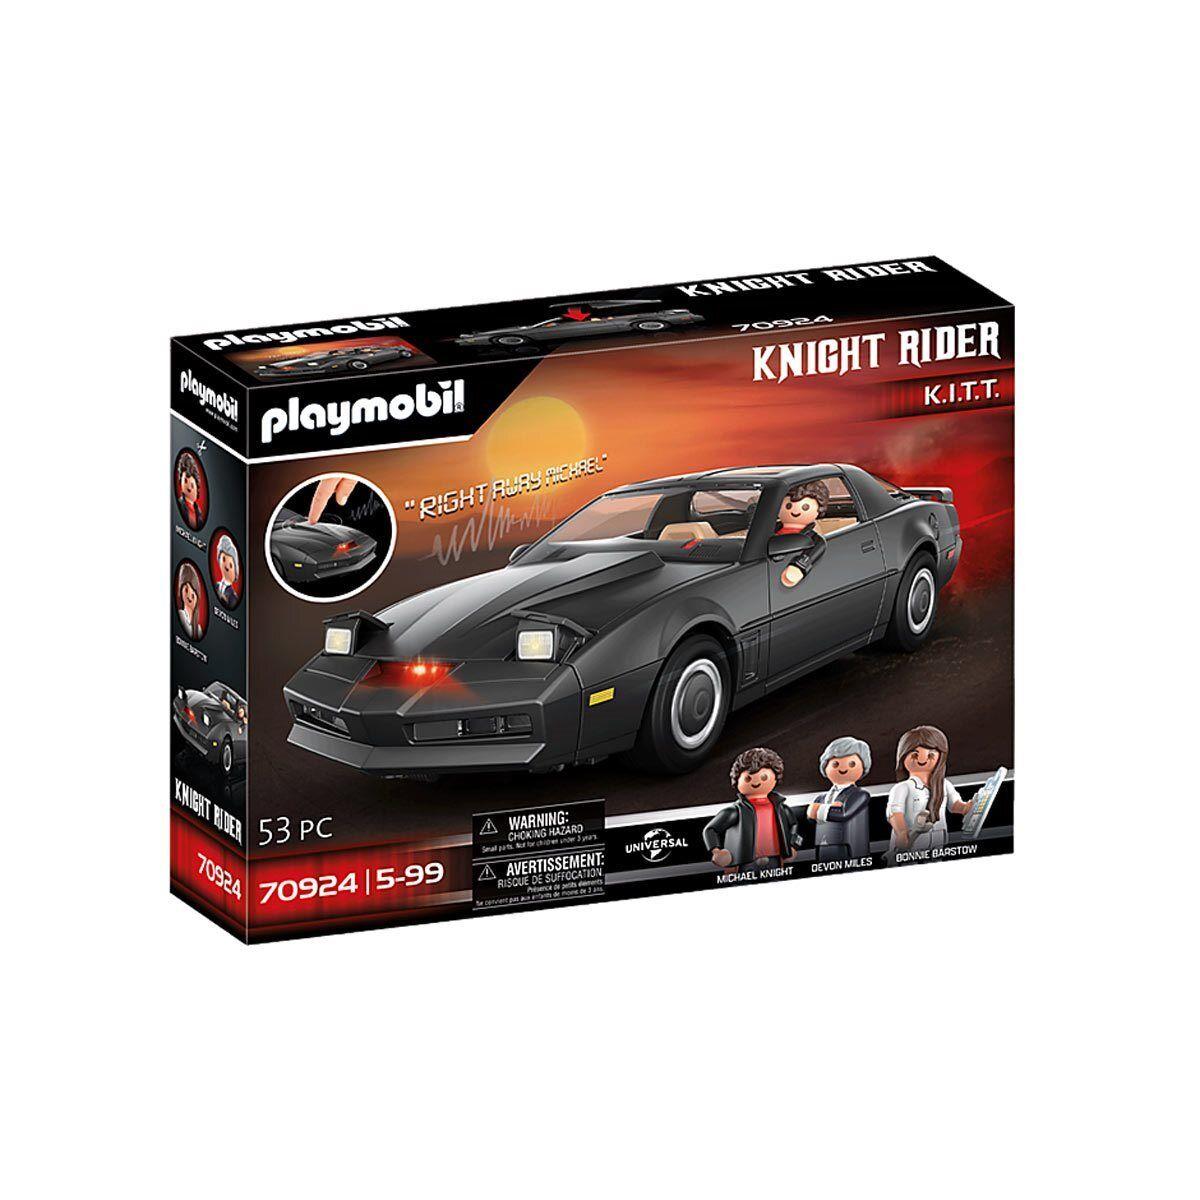 Playmobil 70924 Knight Rider K.i.t.t. Car